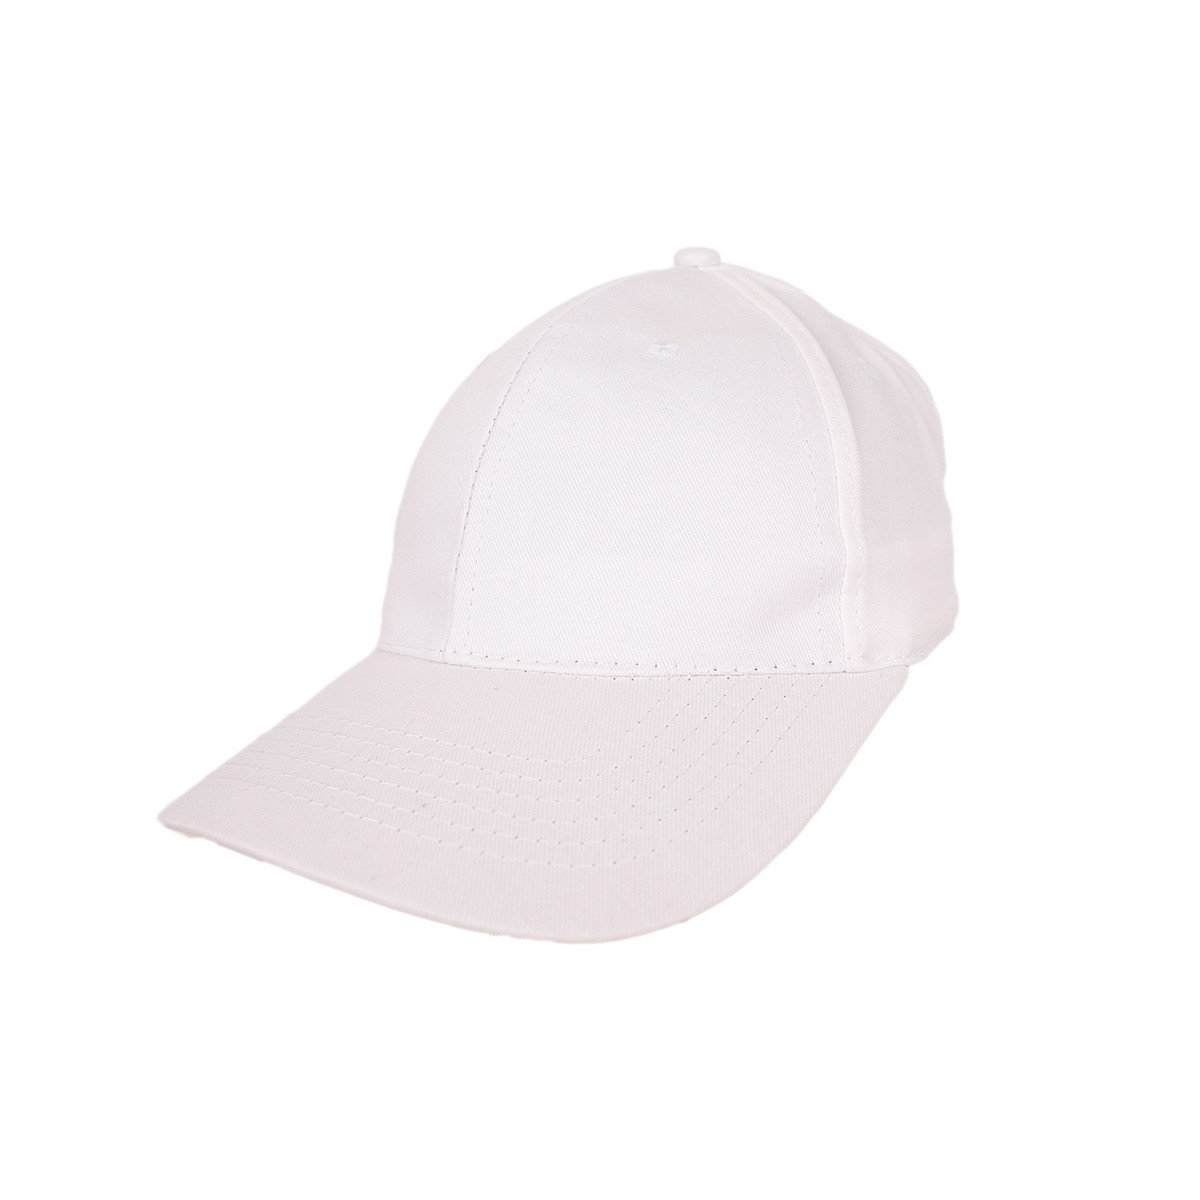 Лятна шапка в бял цвят